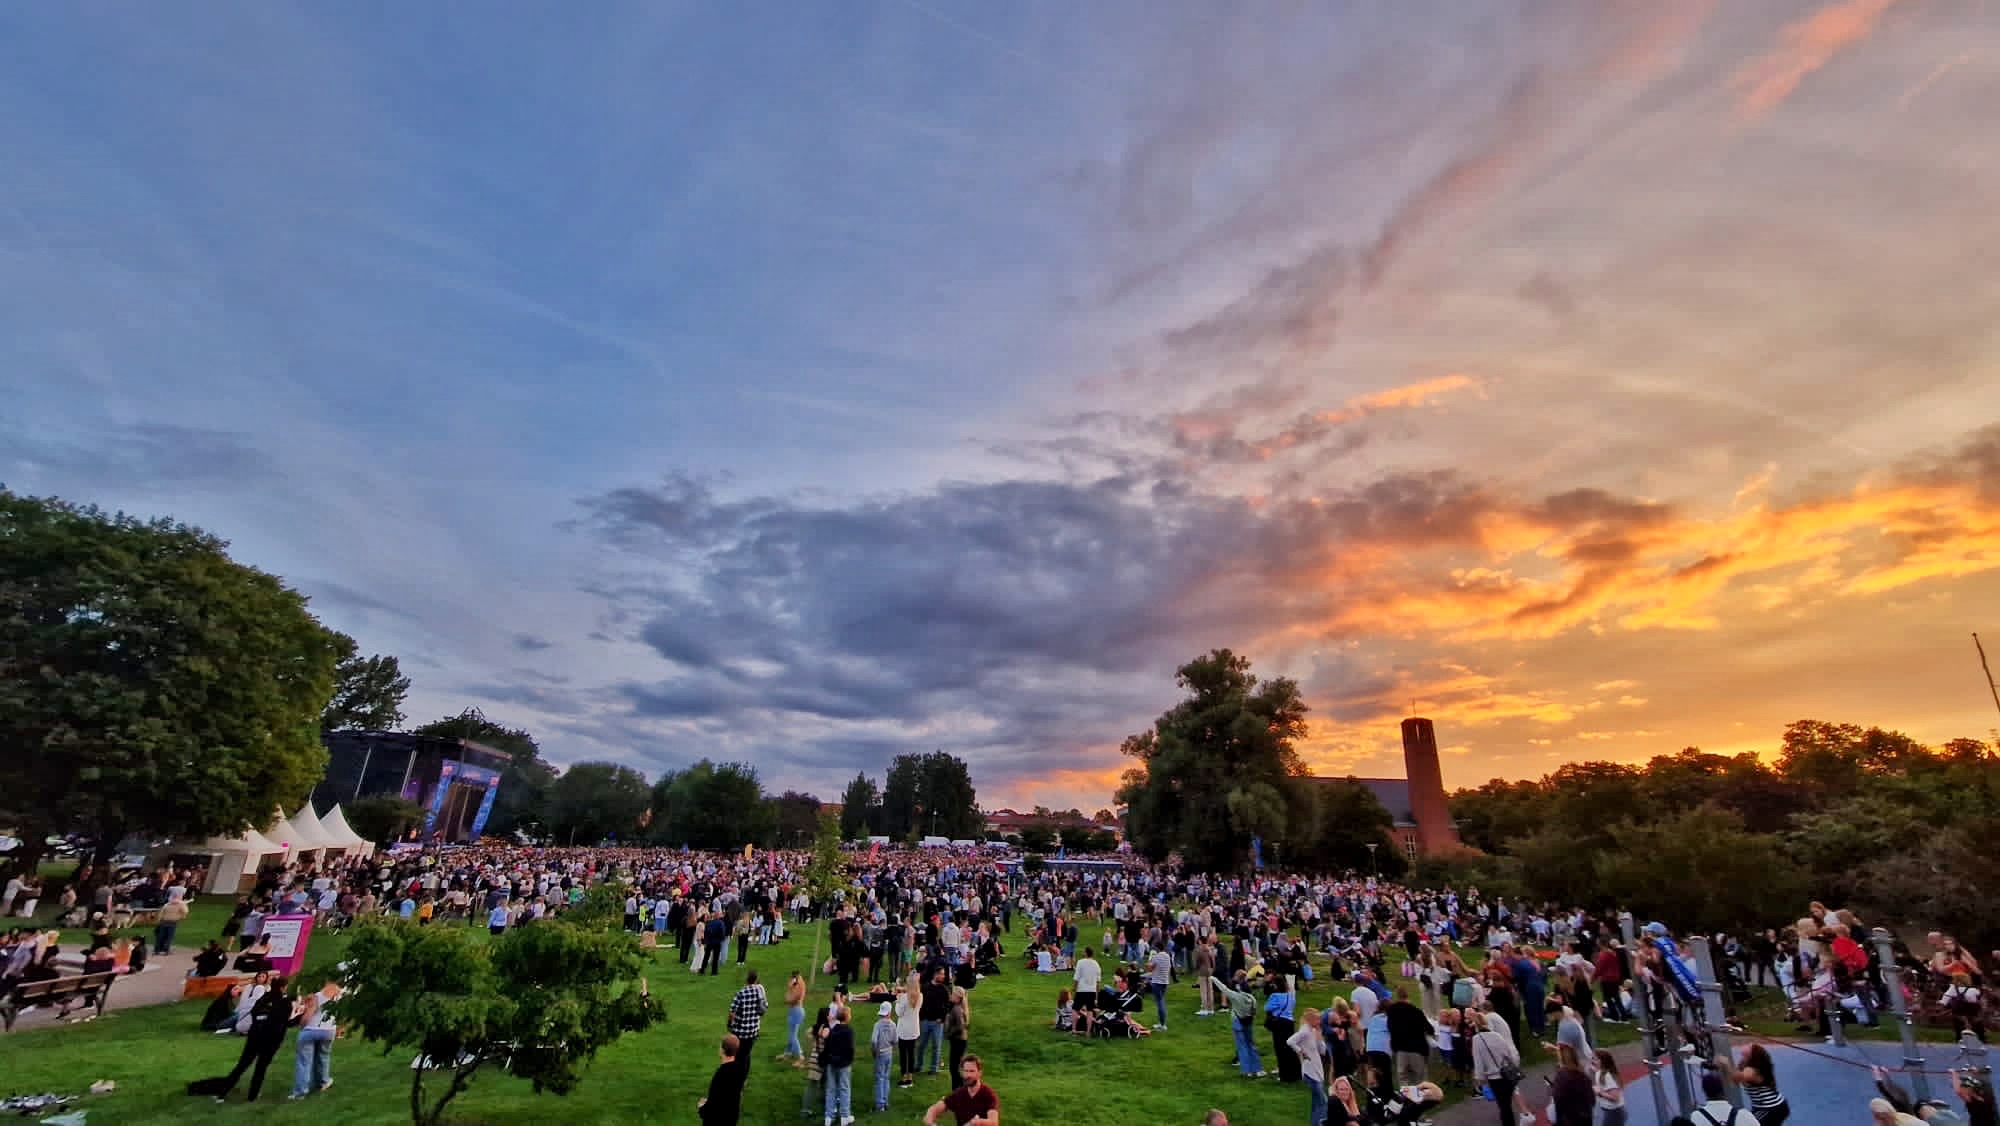 Sommarkväll, solnedgång i Vasaparken med mycket människor och en stor scen.